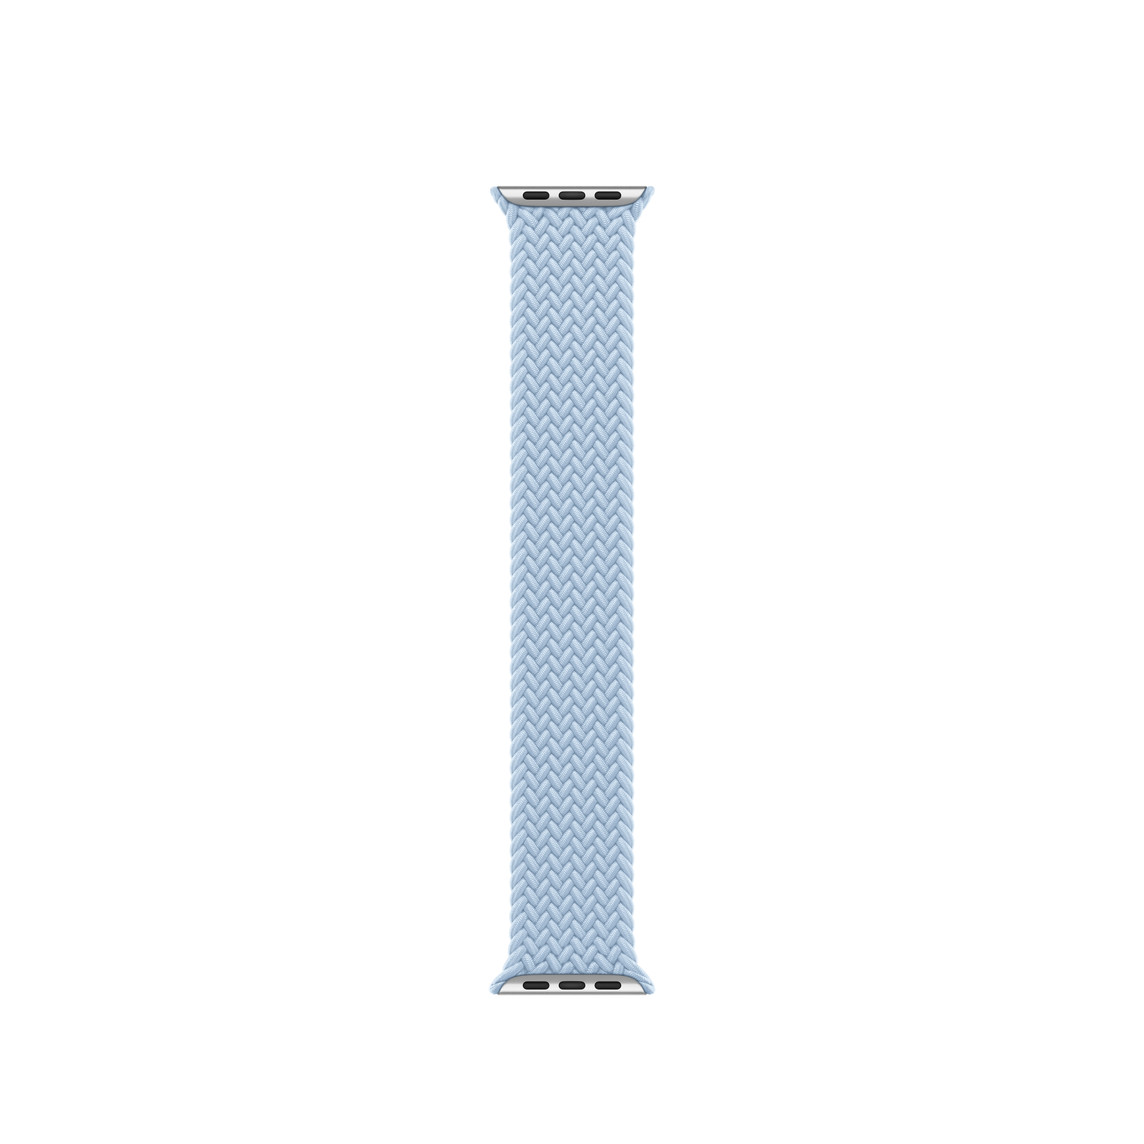 Correa uniloop trenzada azul claro, hecha de poliéster tejido e hilos de silicón sin hebillas ni cierres